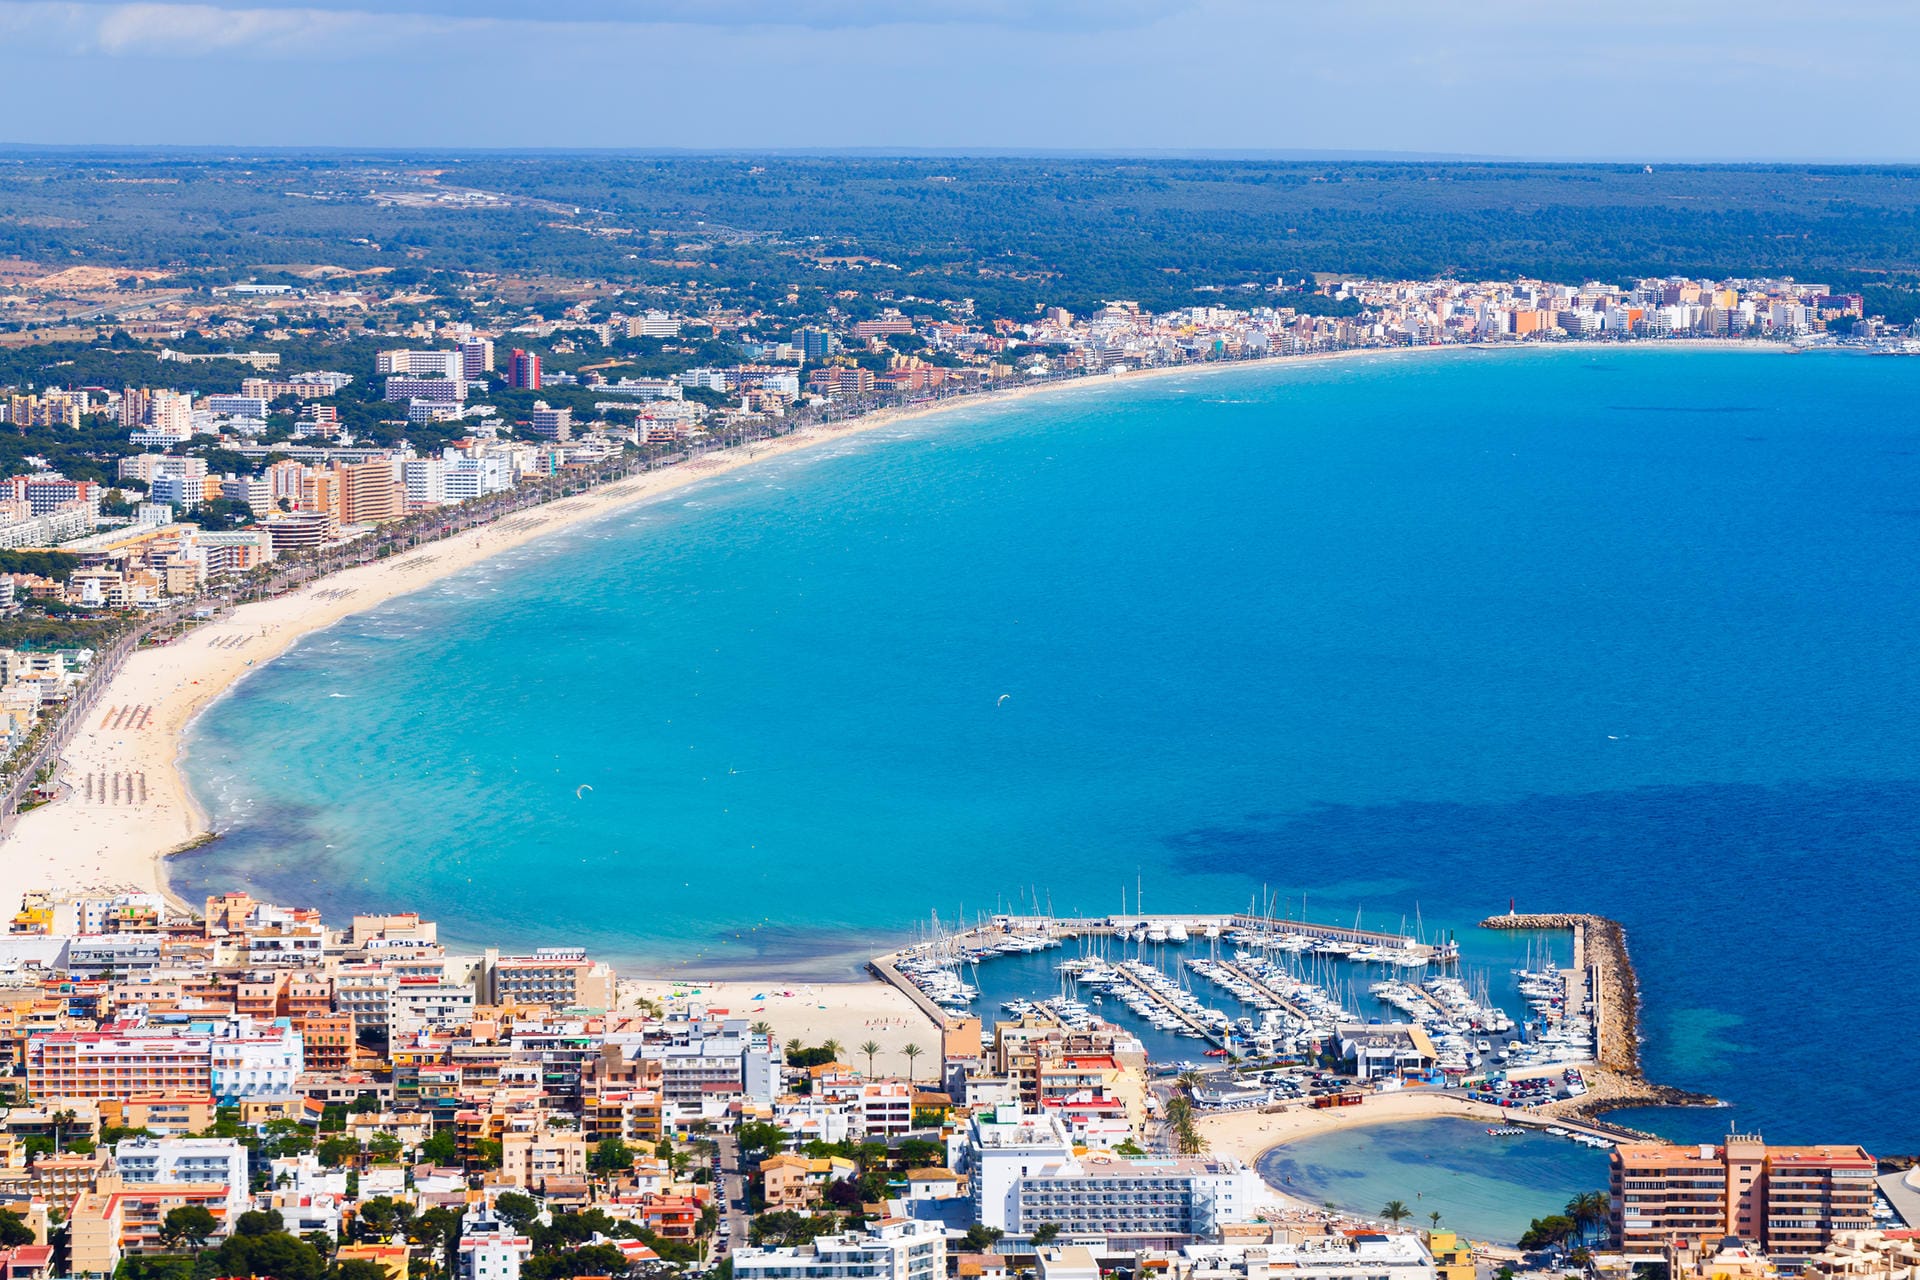 Can Picafort: Neben einer 2,5 Kilometer langen Strandpromenade bietet Can Picafort auch die größte Kartbahn Mallorcas.